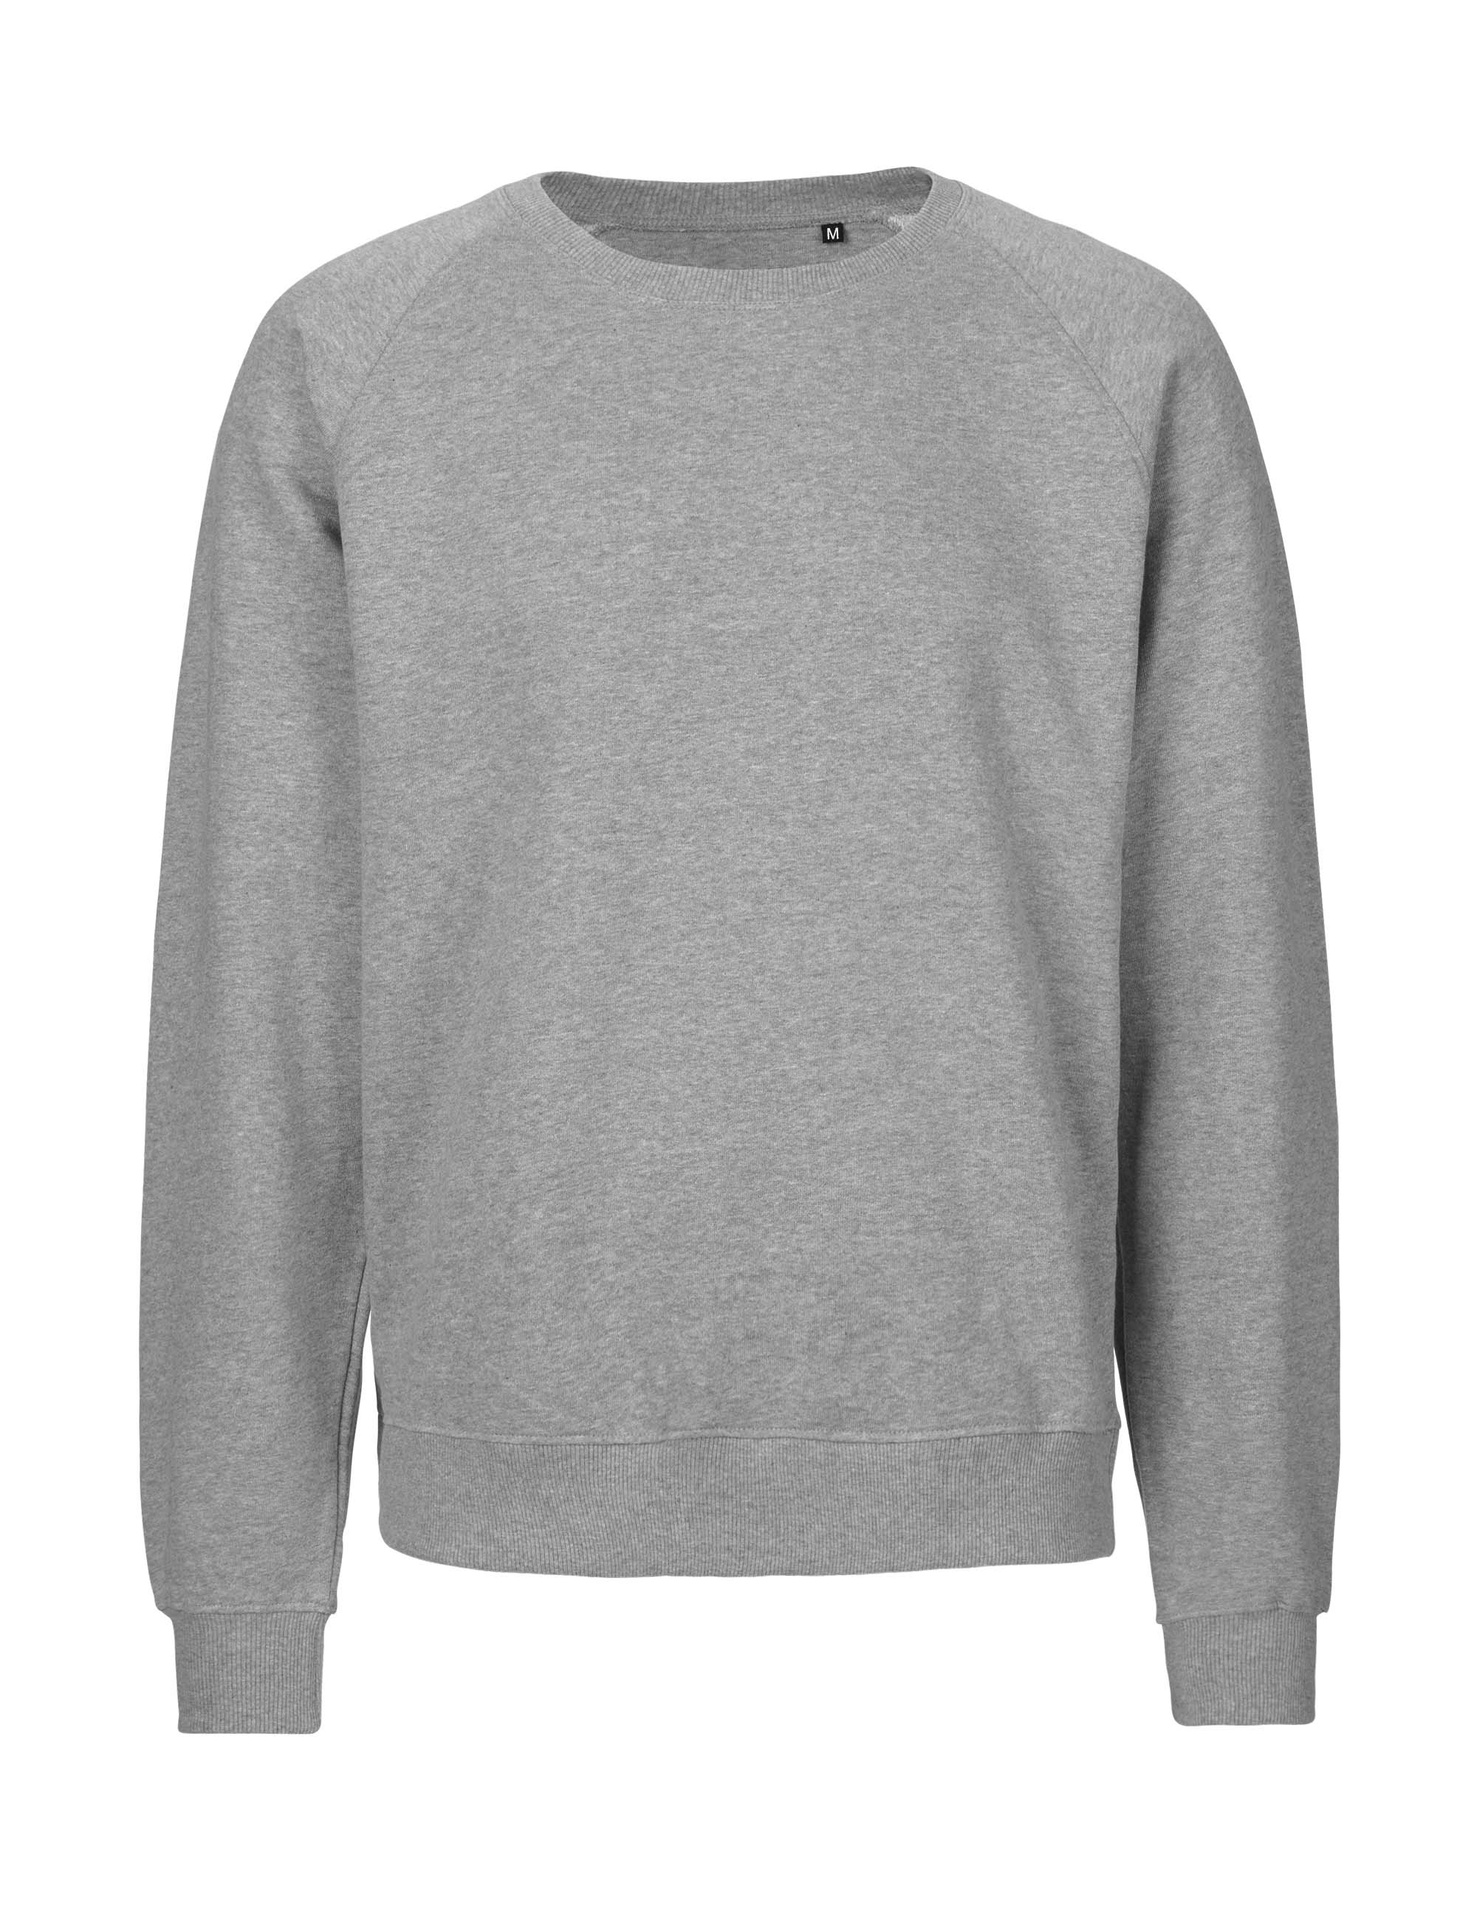 [PR/06026] Unisex Tiger Cotton Sweatshirt (Sport Grey 21, XS)